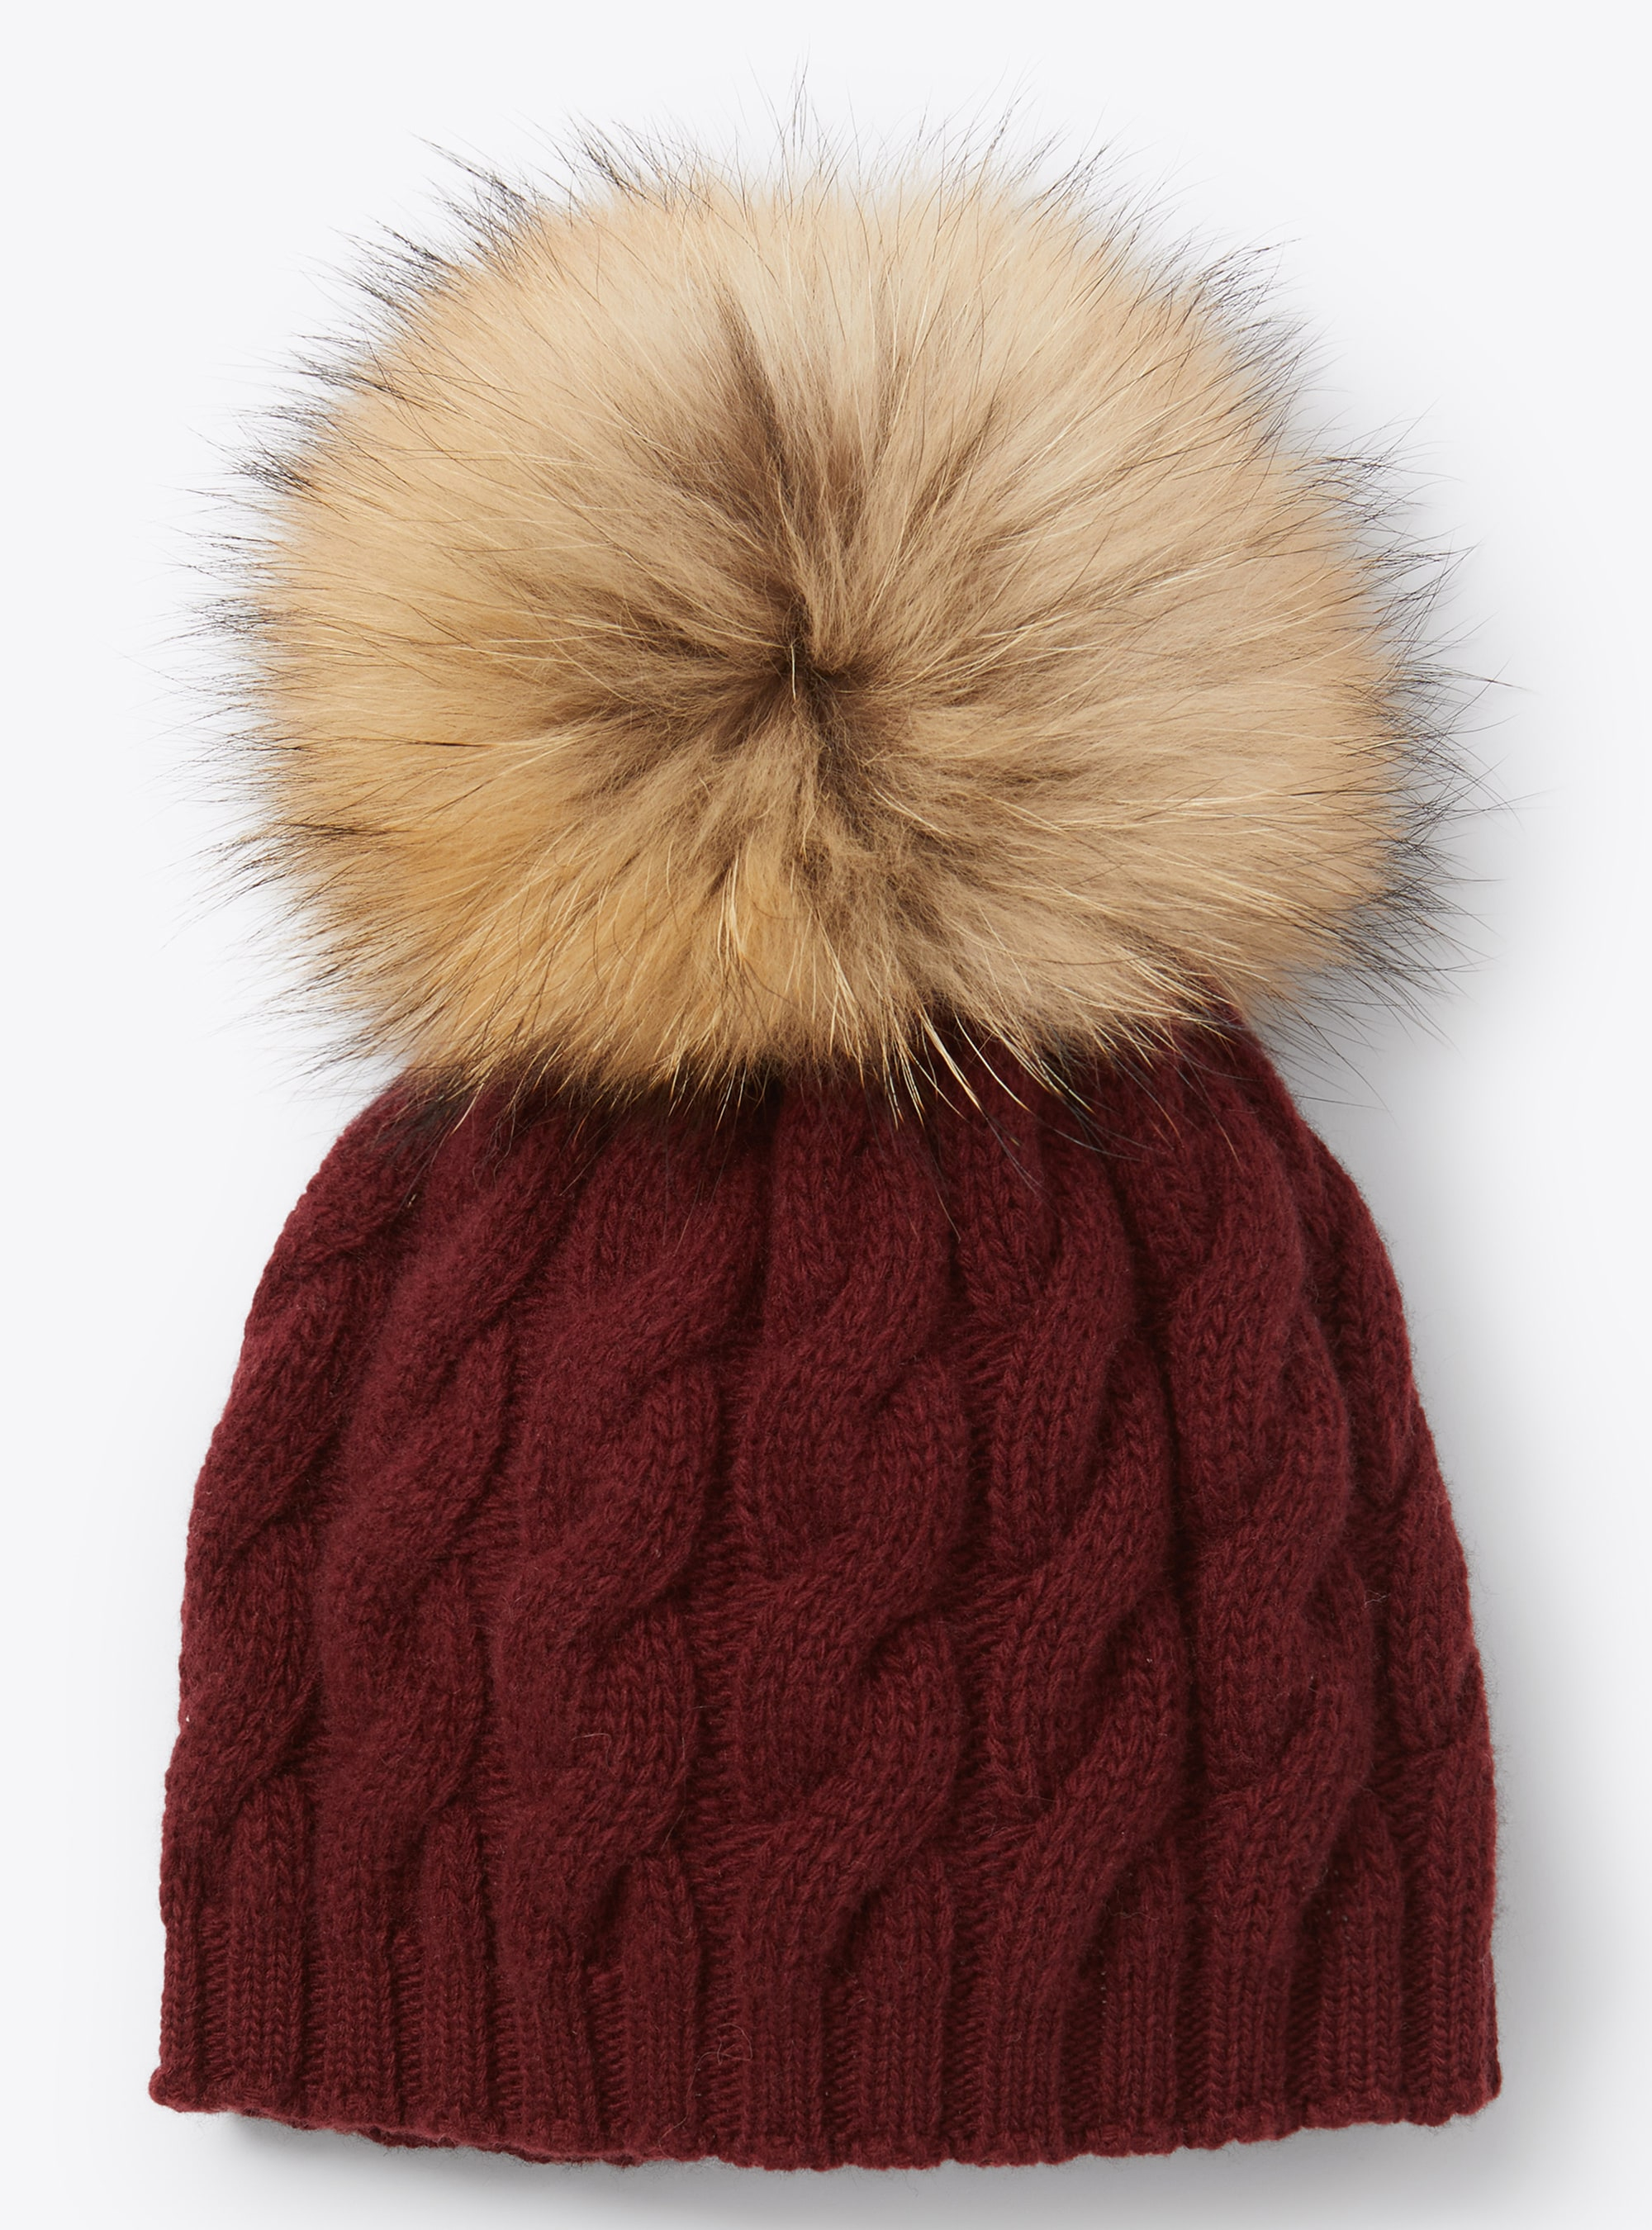 Pompom burgundy knitted hat - Burgundy | Il Gufo